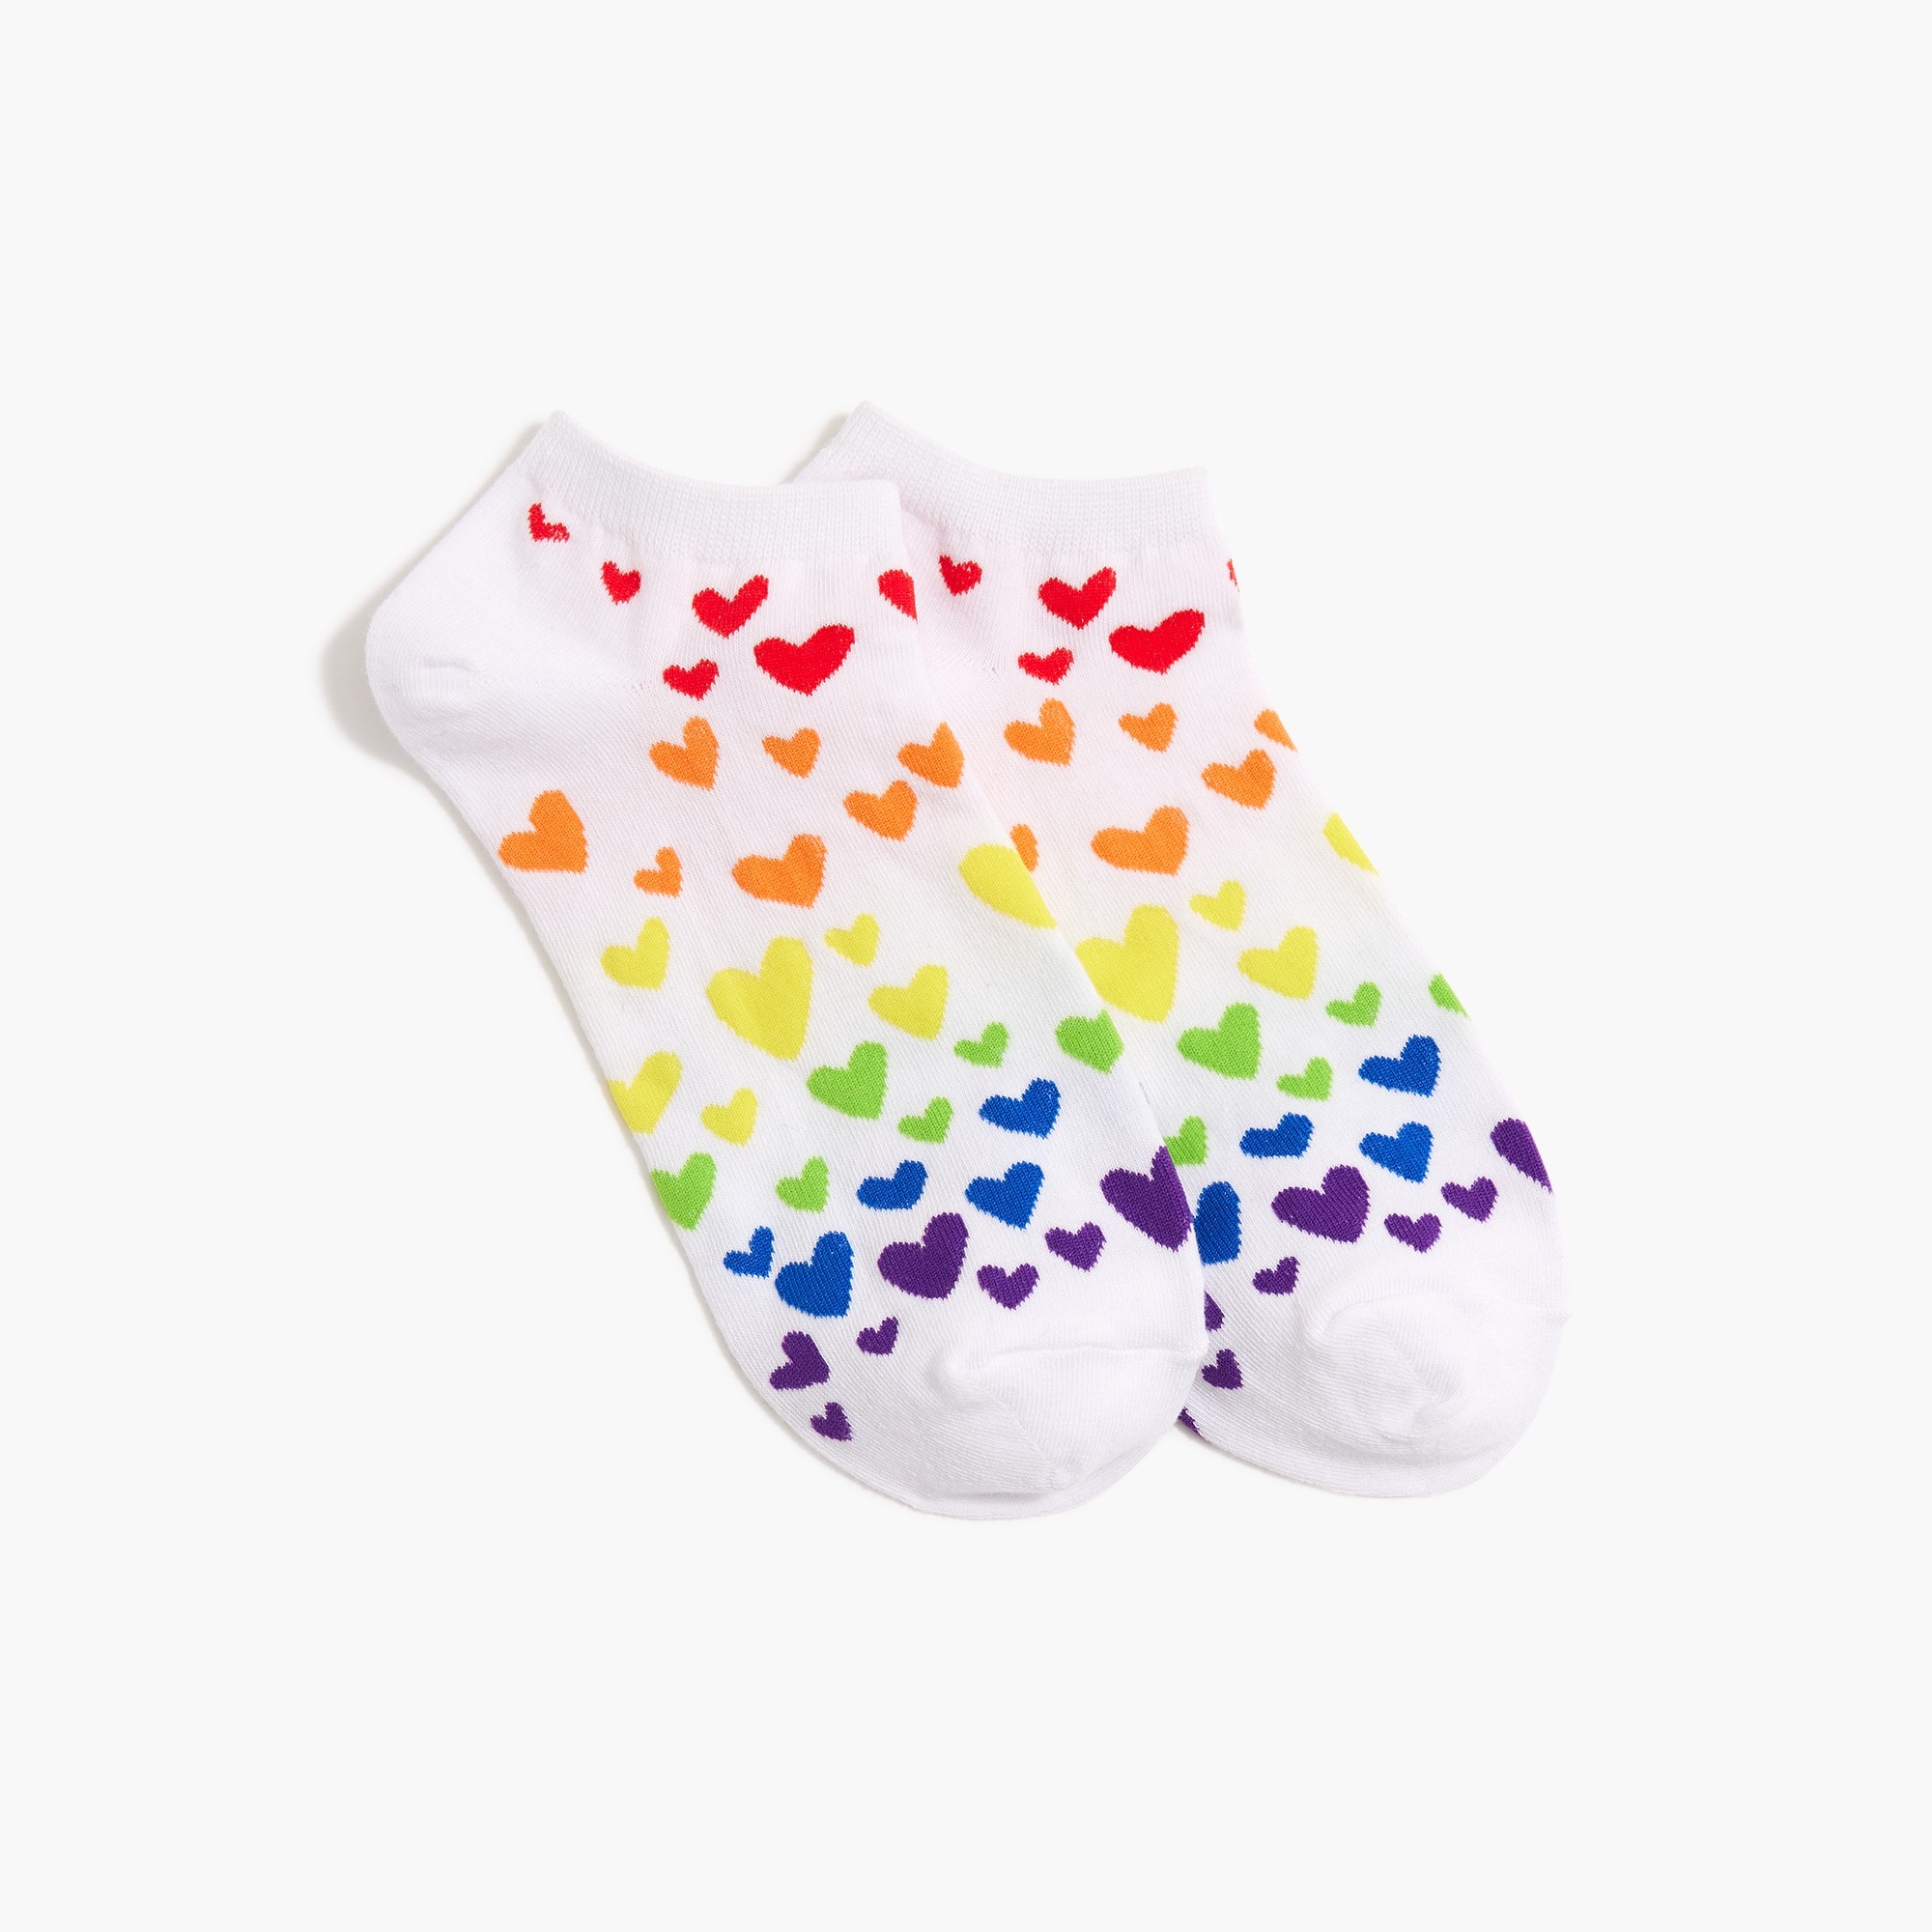  Rainbow hearts ankle socks